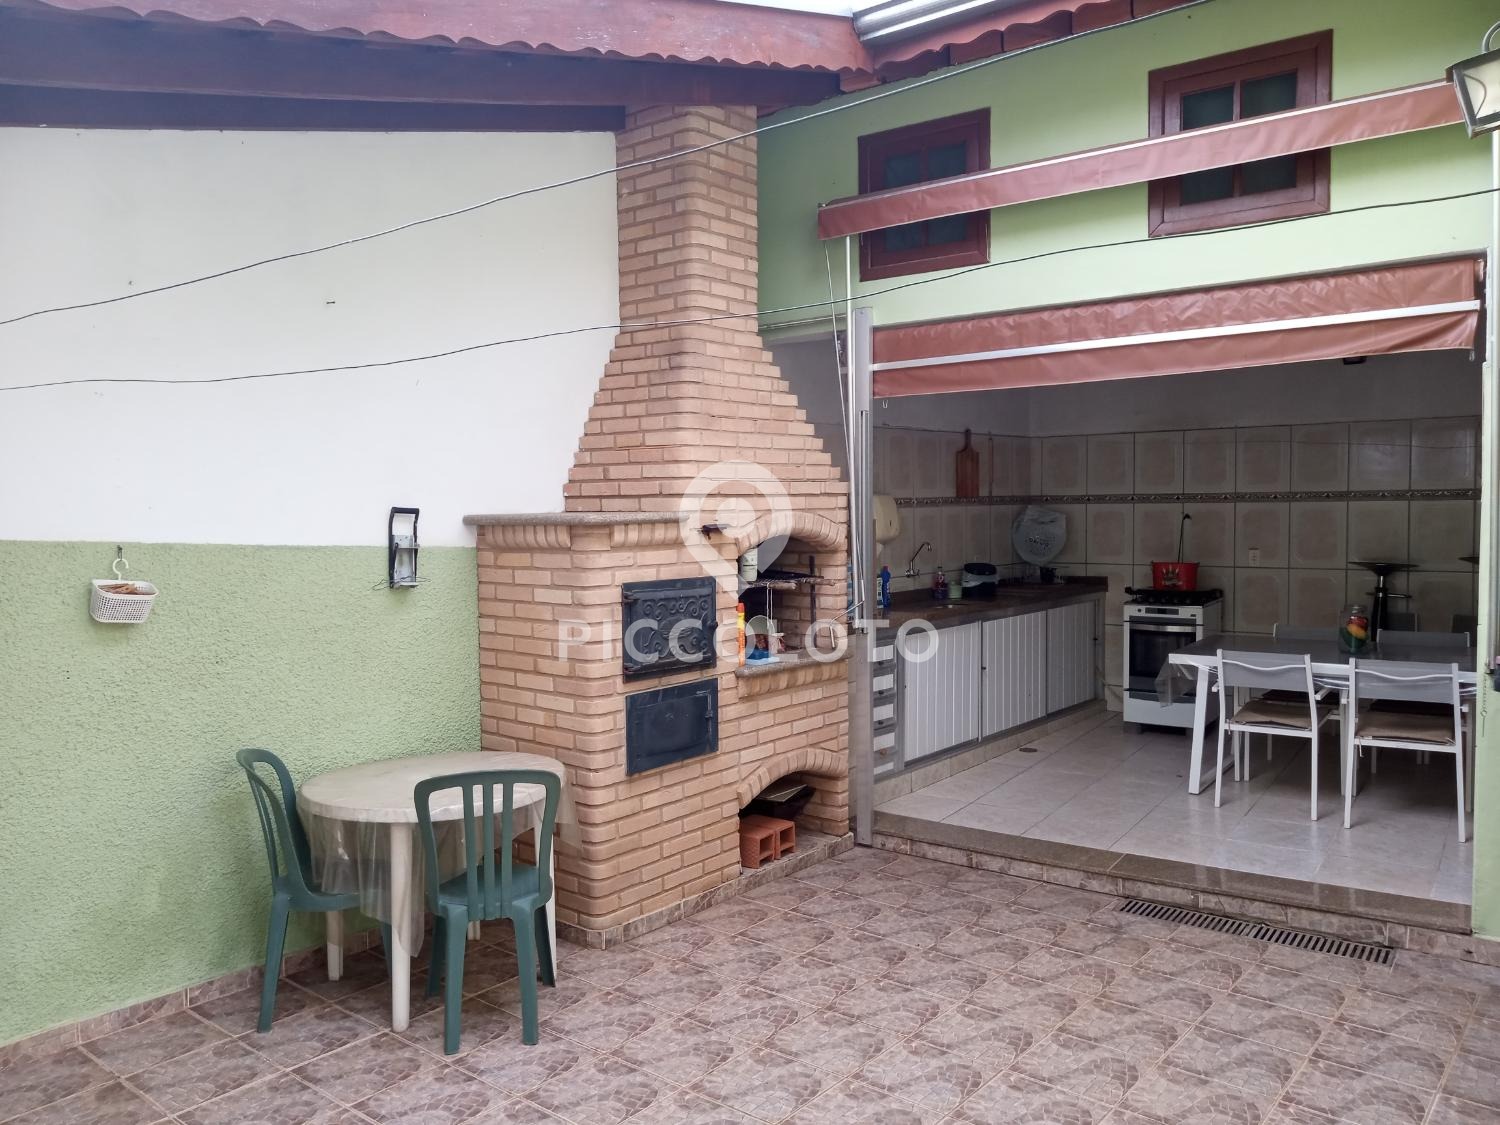 Piccoloto -Casa à venda no Jardim Alto da Barra em Campinas